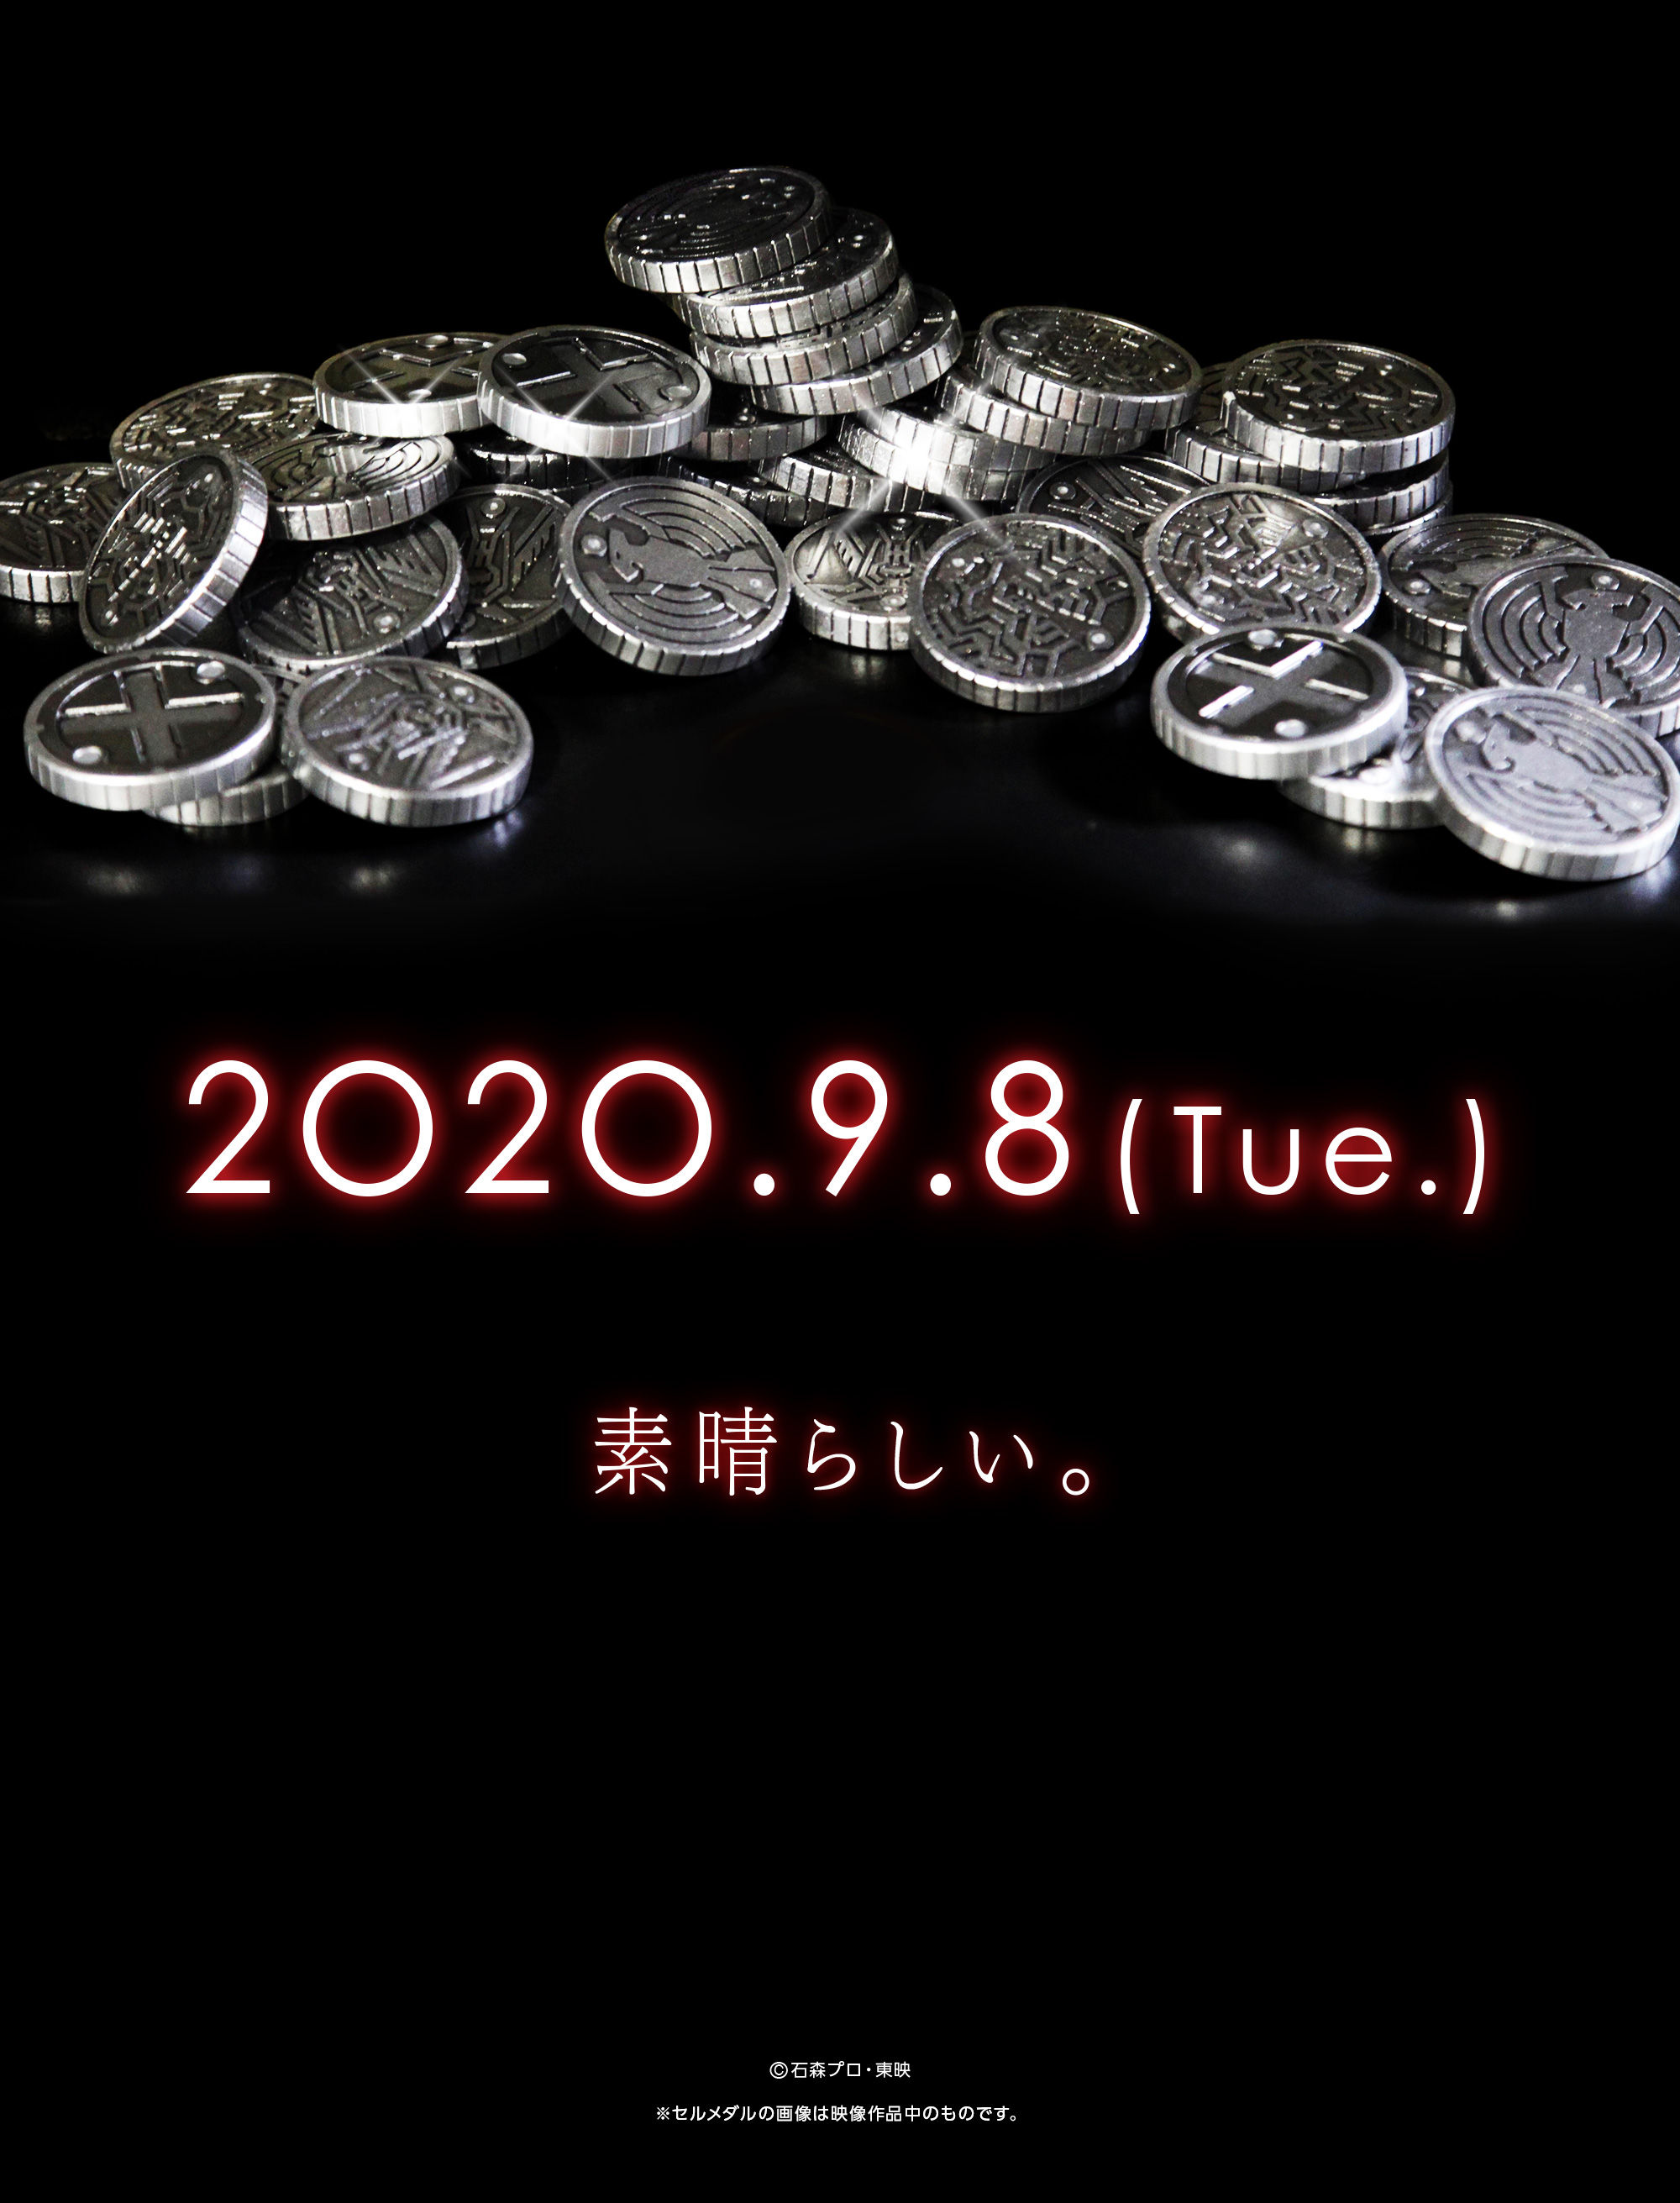 仮面ライダーオーズ』10周年記念 「CSMセルメダル」「CSMコアメダル 